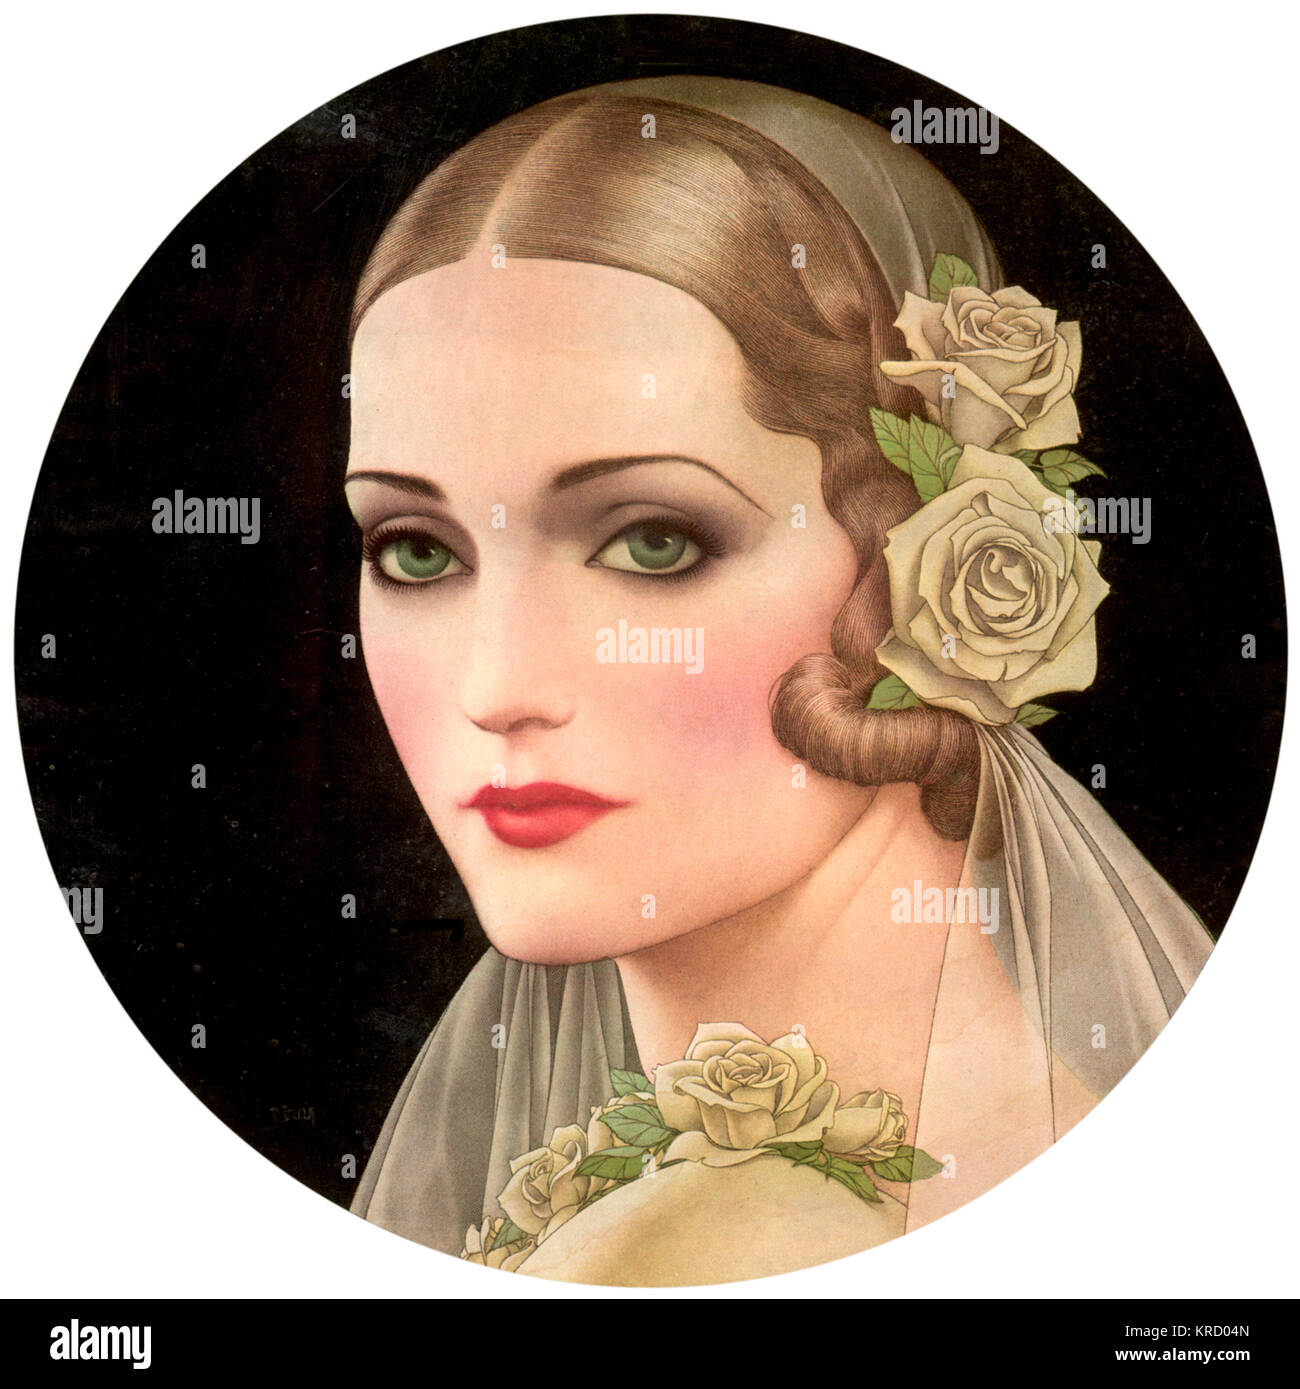 Eine schöne Blondine, grünäugige Braut für 1931 das Tragen eines Schleiers und bekleidet mit weißen Rosen getrimmt. Datum: Juni 1931 Stockfoto